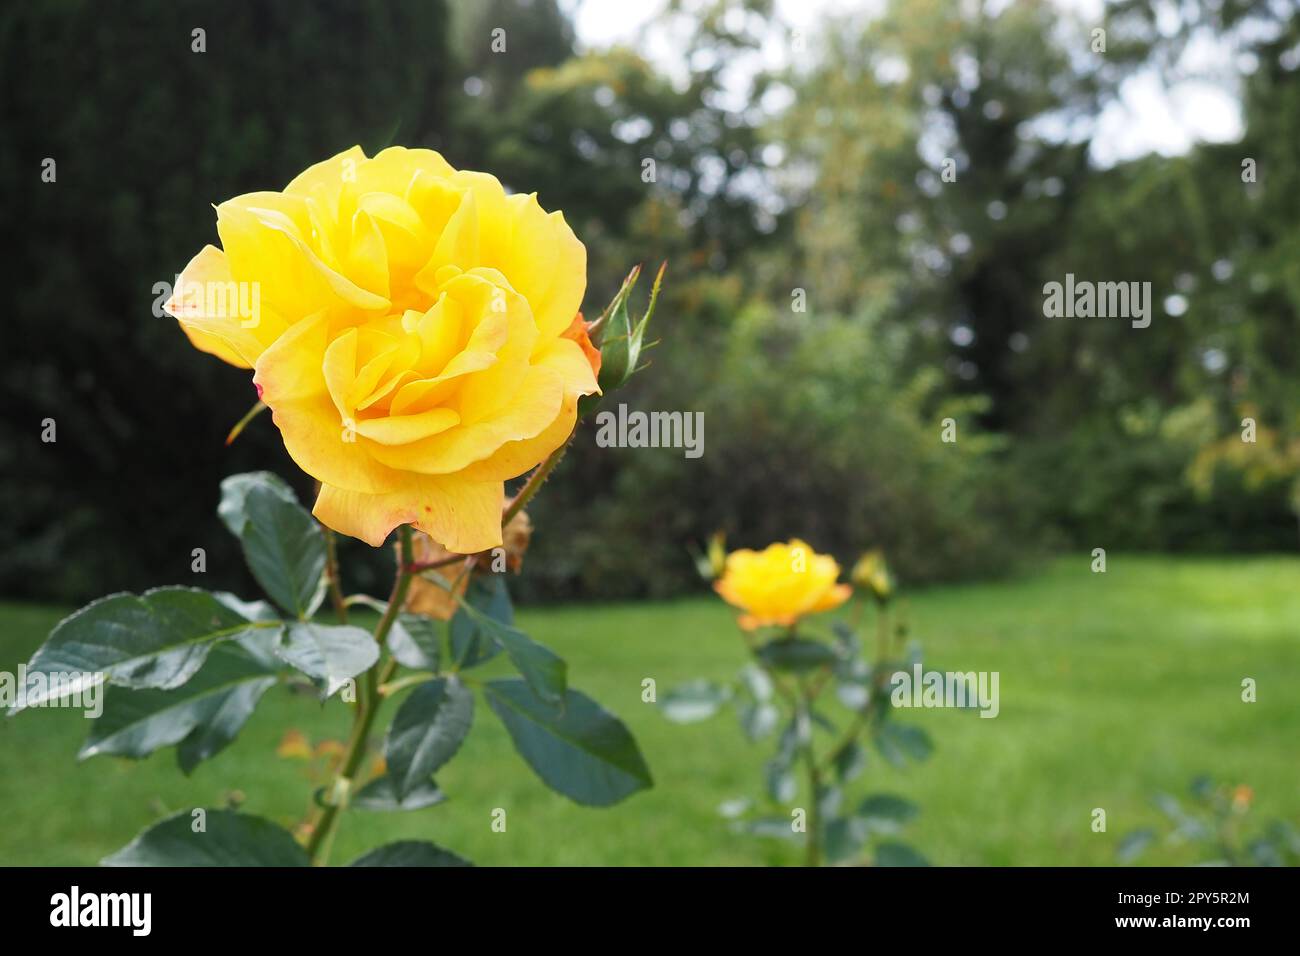 Gelbe Rosen im Garten oder Park. Banja Koviljaca, Serbien. Ein Busch gelber Hybrid-Teerösen als Dekoration im Landschaftsdesign. Blumenzucht und Gartenarbeit als Hobby. Stockfoto